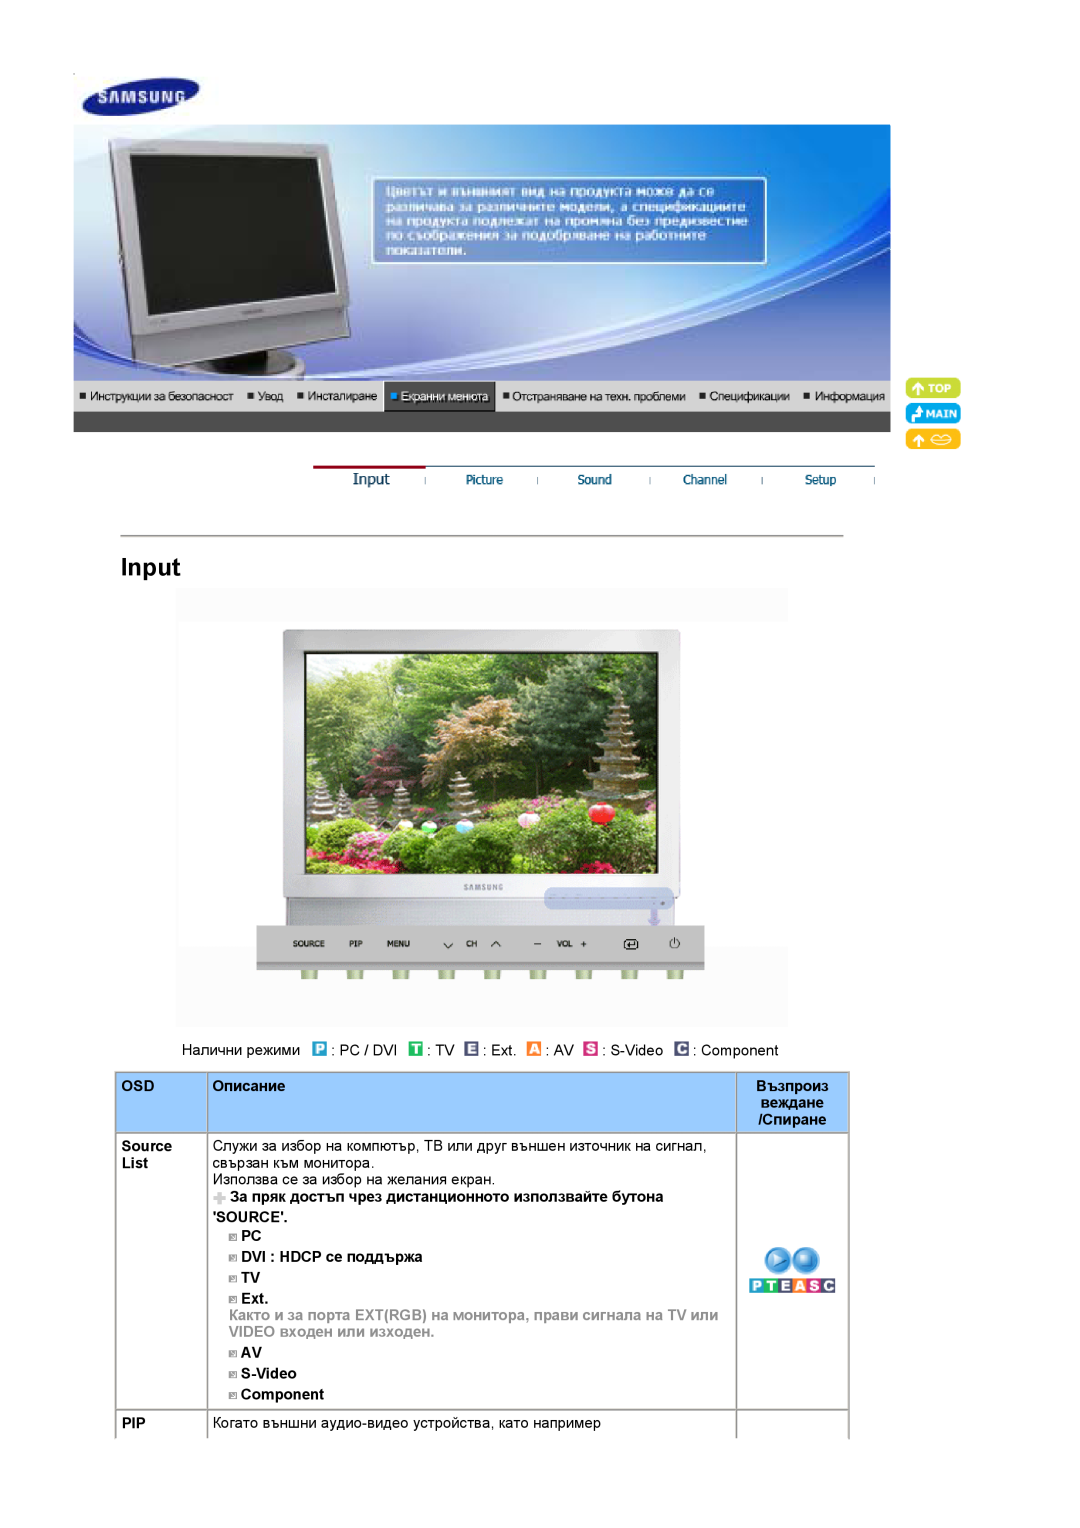 Samsung LS19DOWSSZ/EDC manual Input, Както и за порта EXTRGB на монитора, прави сигнала на TV или, VIDEO входен или изходен 